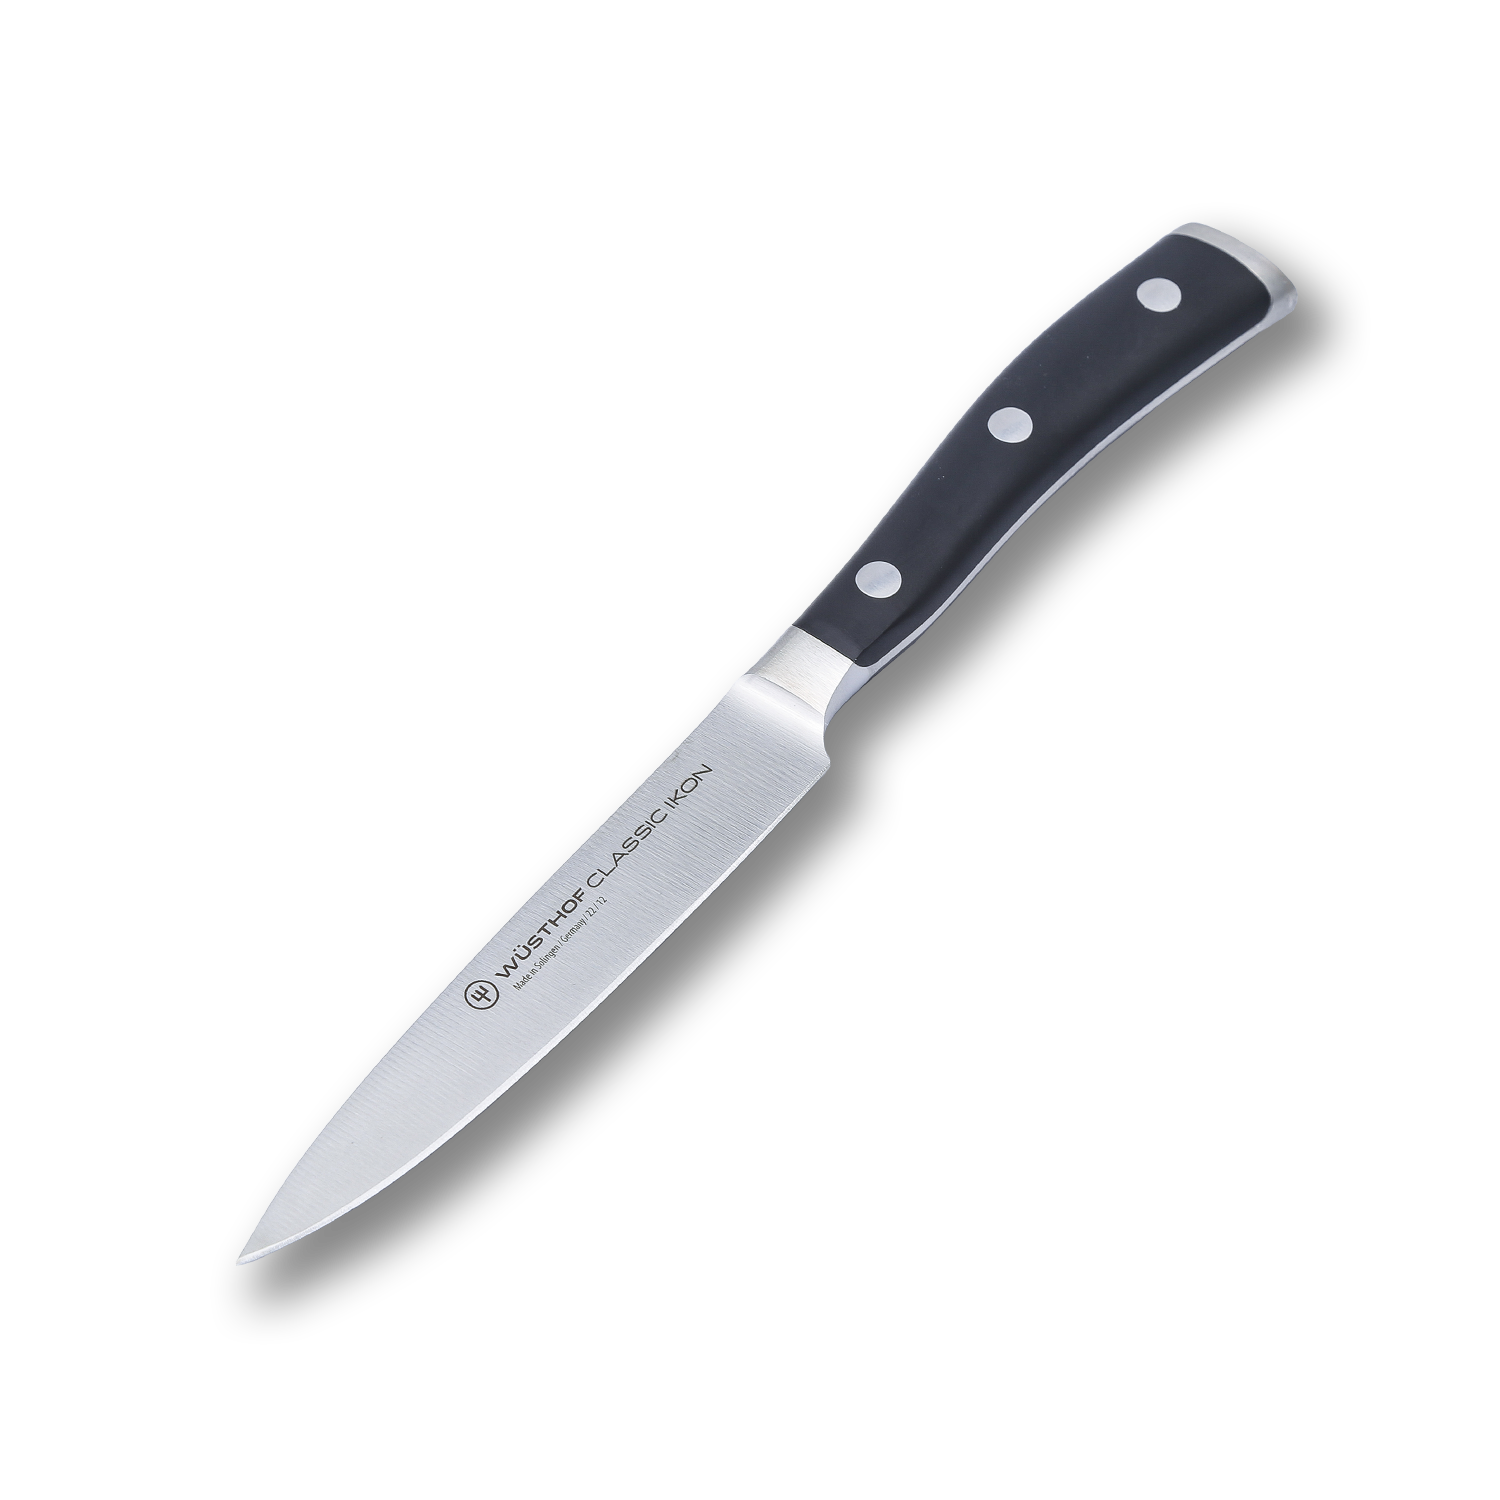 Универсальный кухонный нож Wuesthof 12 см, кованая молибден-ванадиевая нержавеющая сталь X50CrMoV15, 1040330412